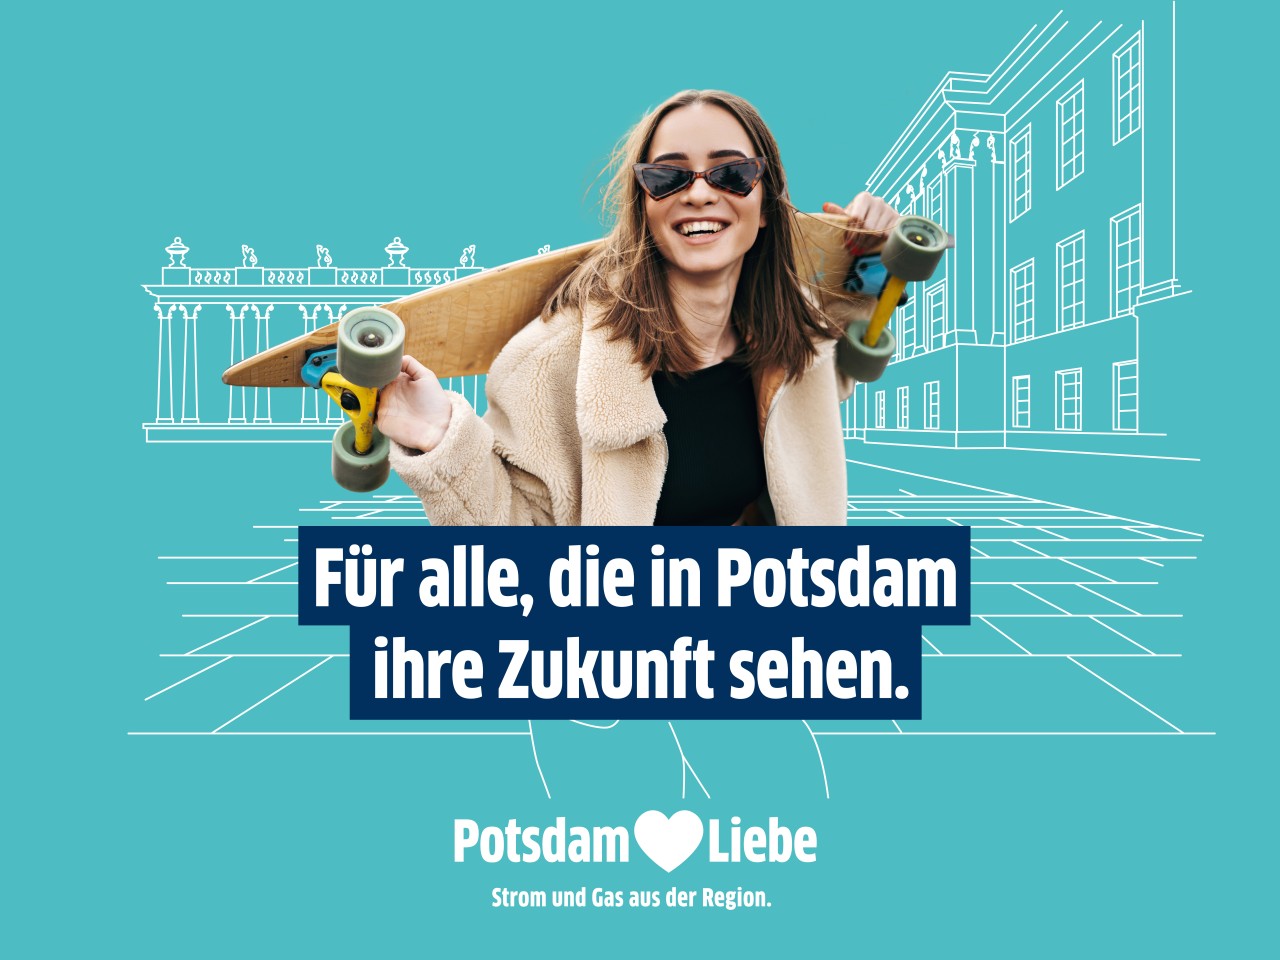 Für alle, die in Potsdam ihre Zukunft sehen. Potsdam-Liebe.